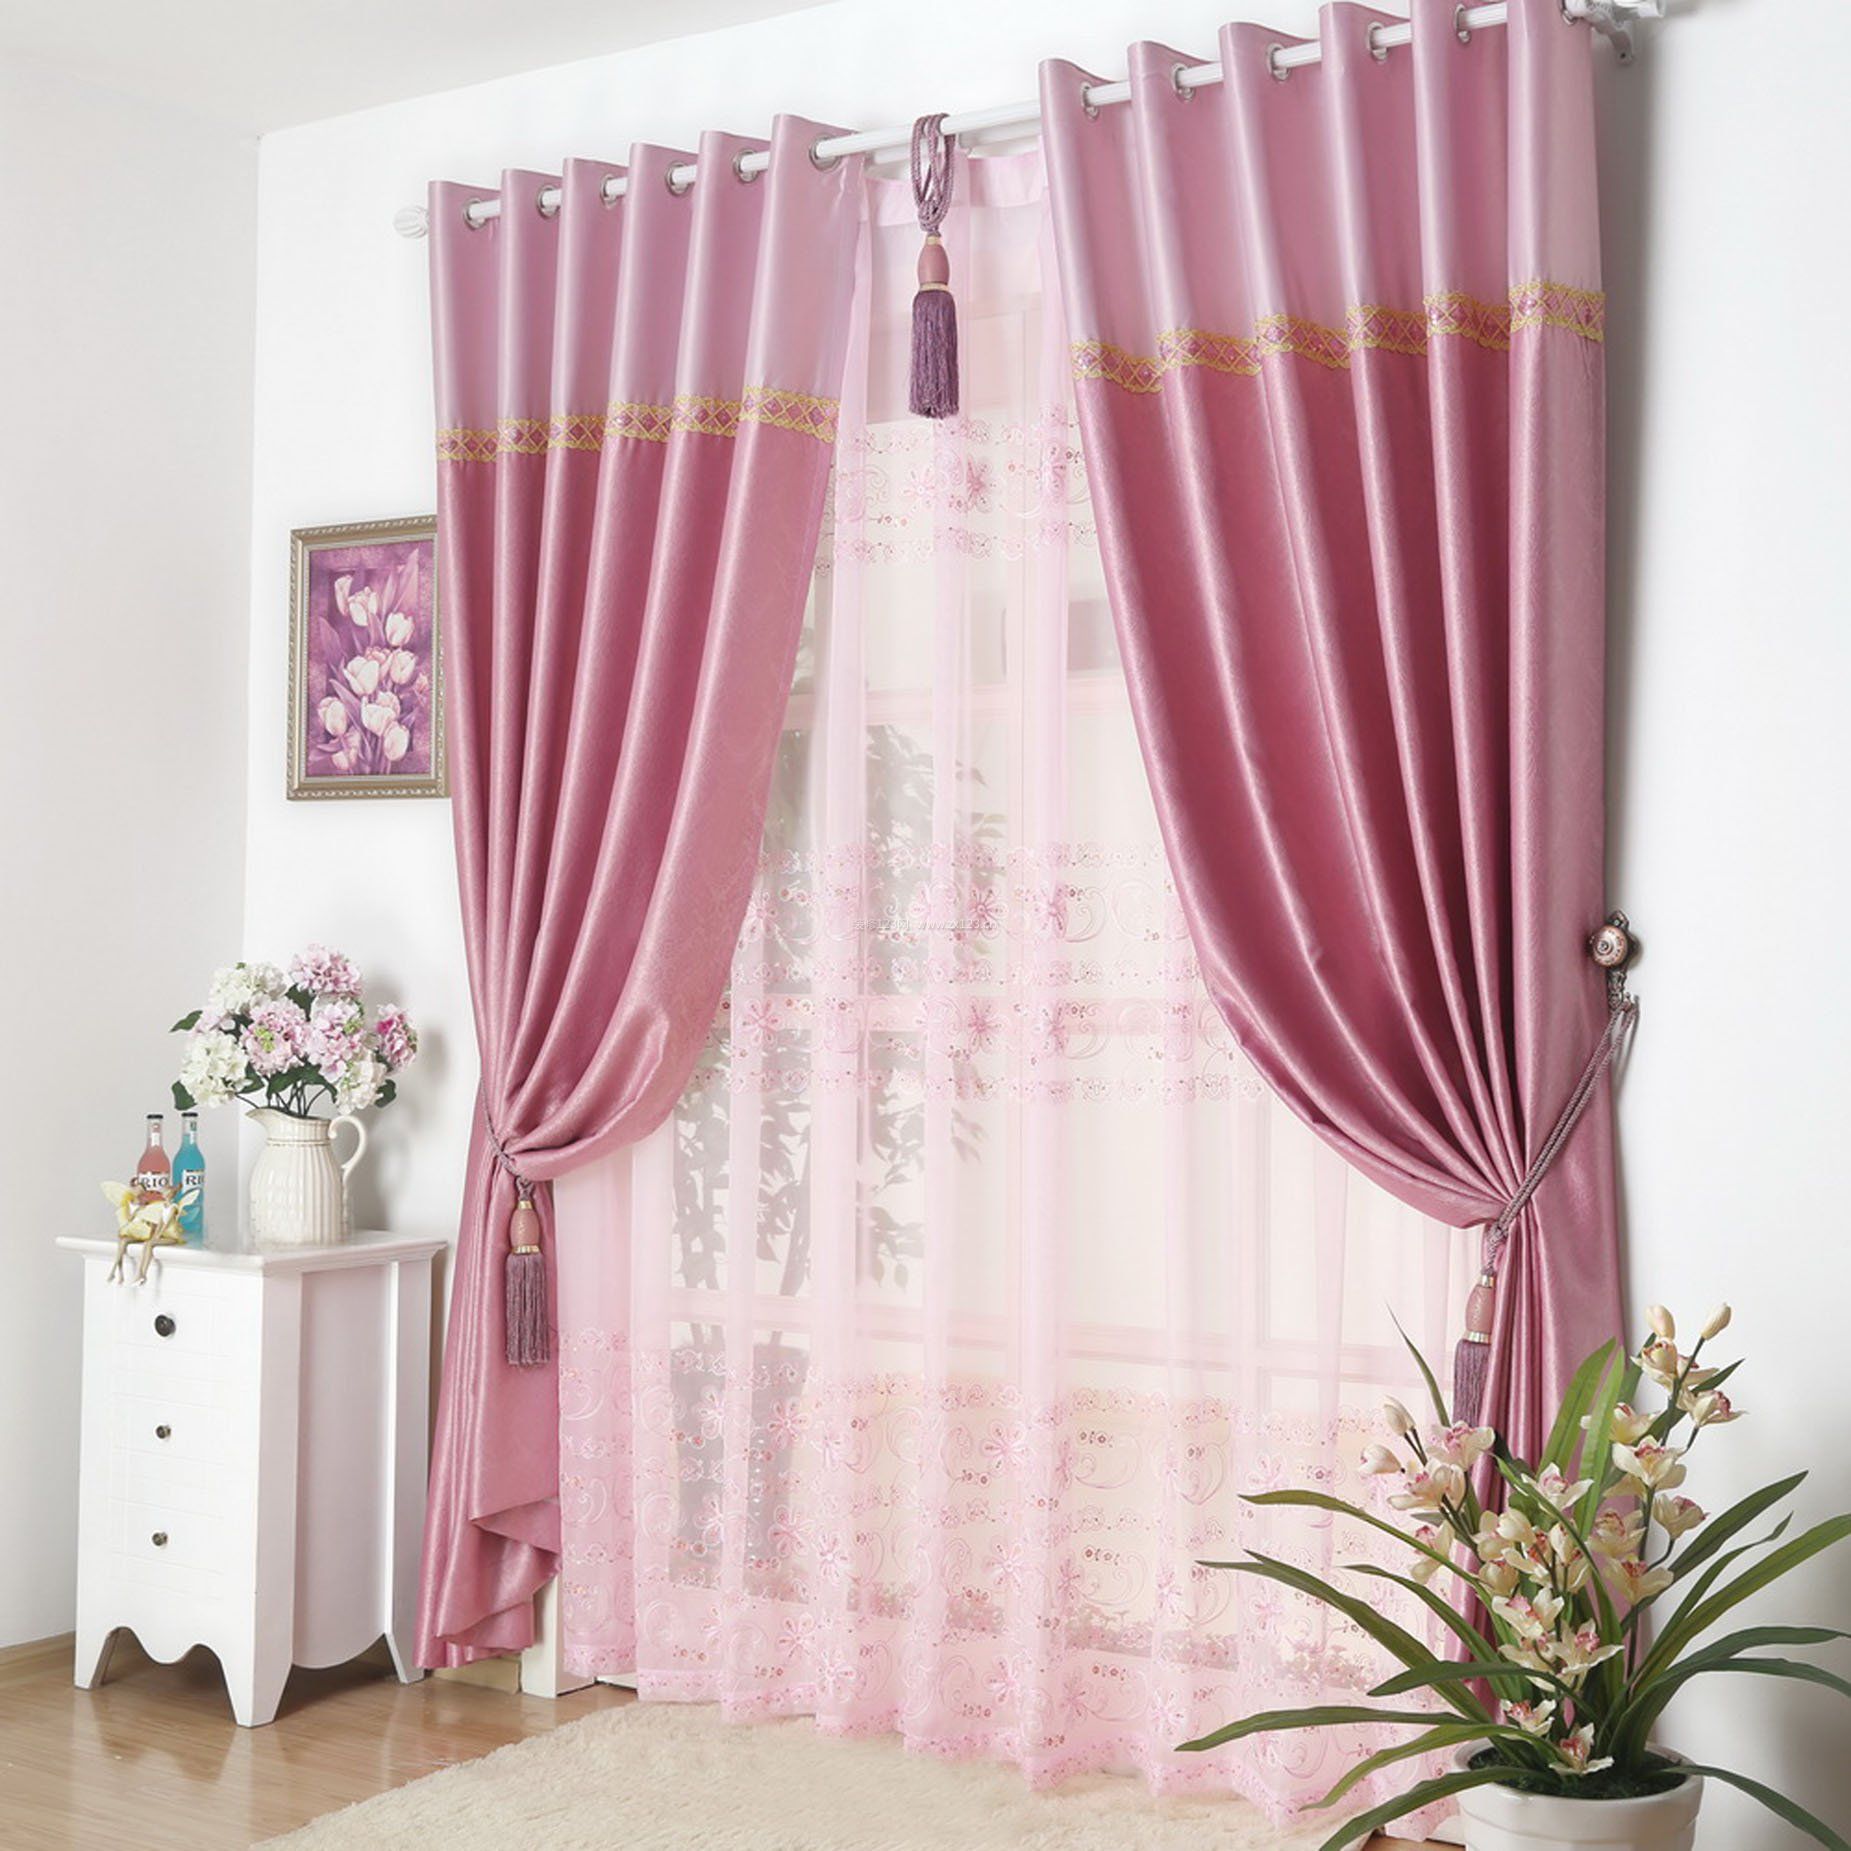 2017客厅粉色淑女型窗帘设计图片